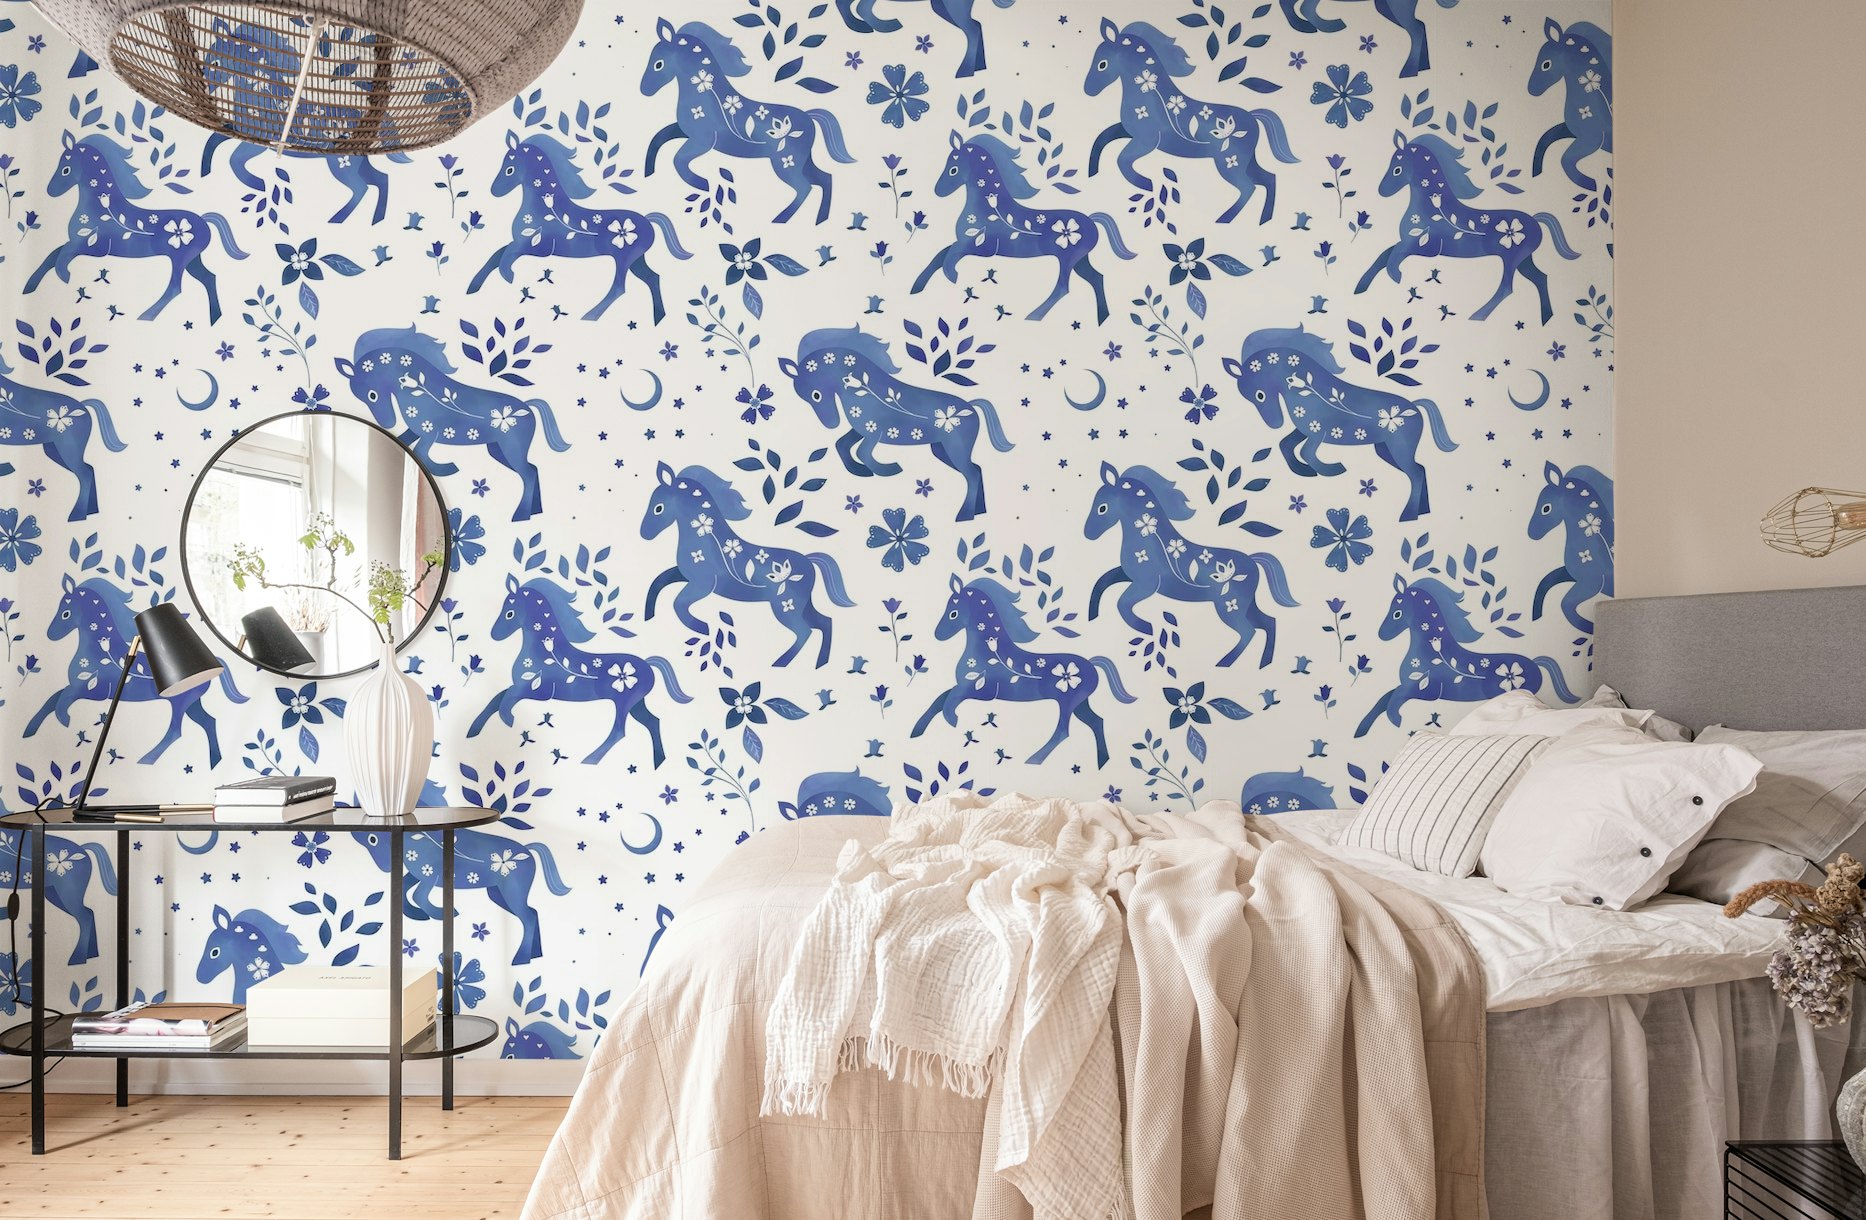 Delft Blue Horses wallpaper